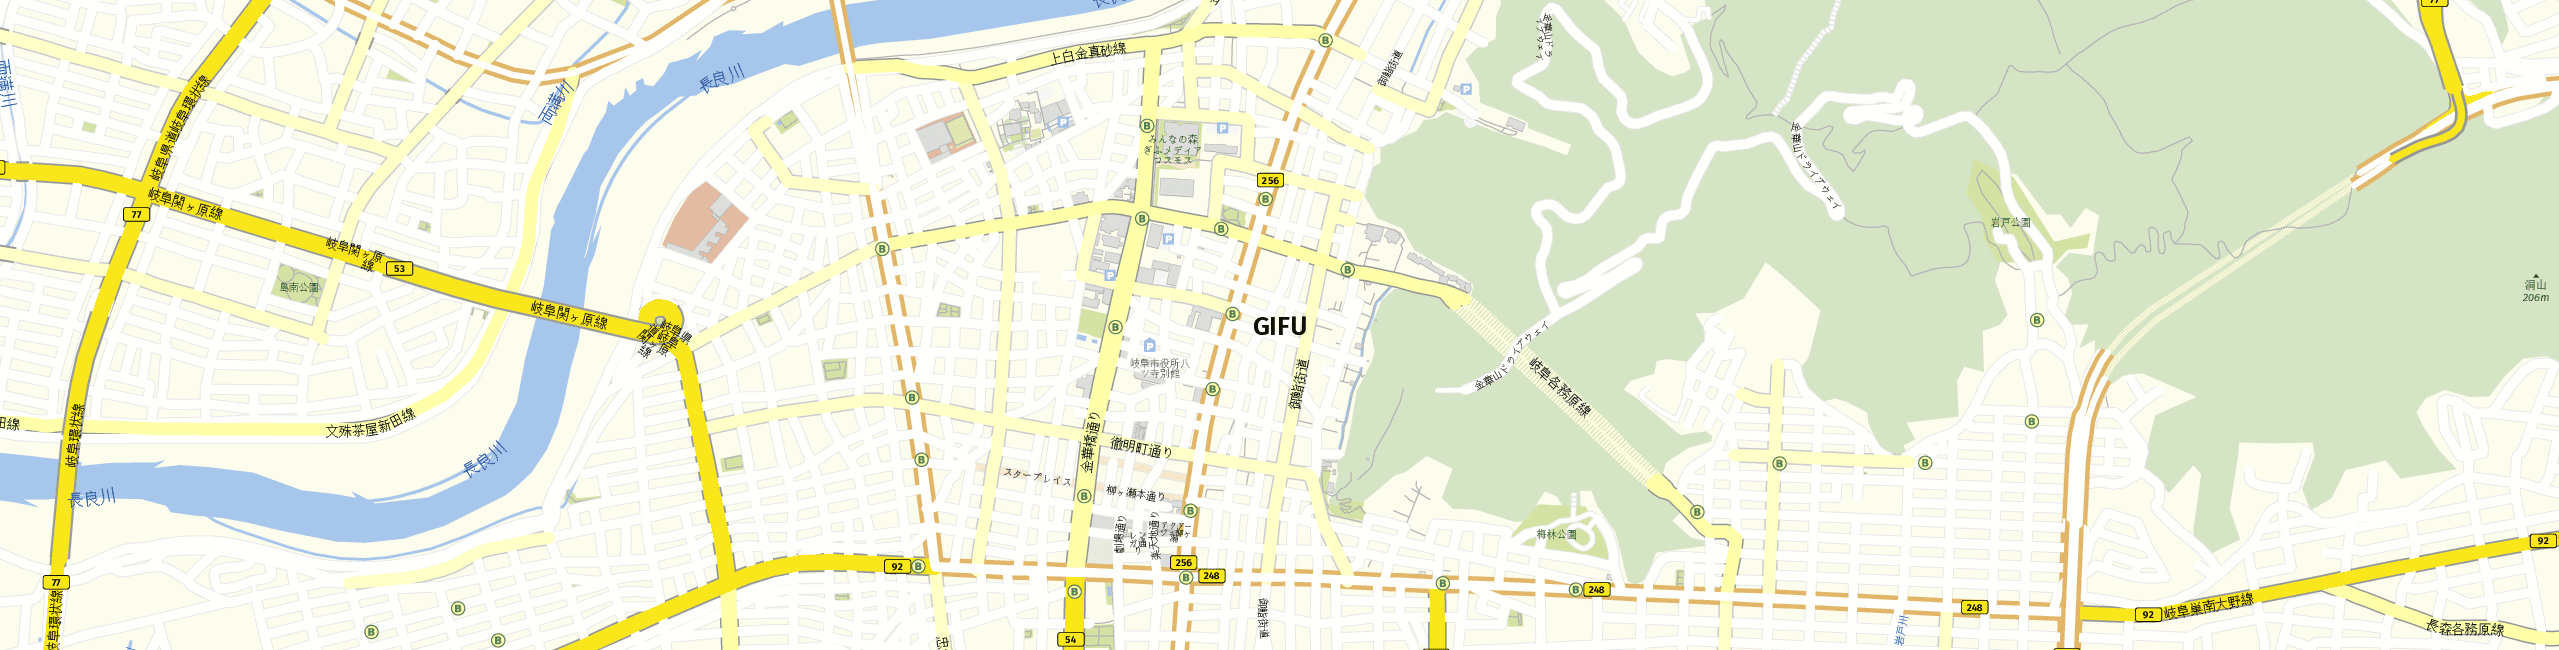 Stadtplan Gifu zum Downloaden.